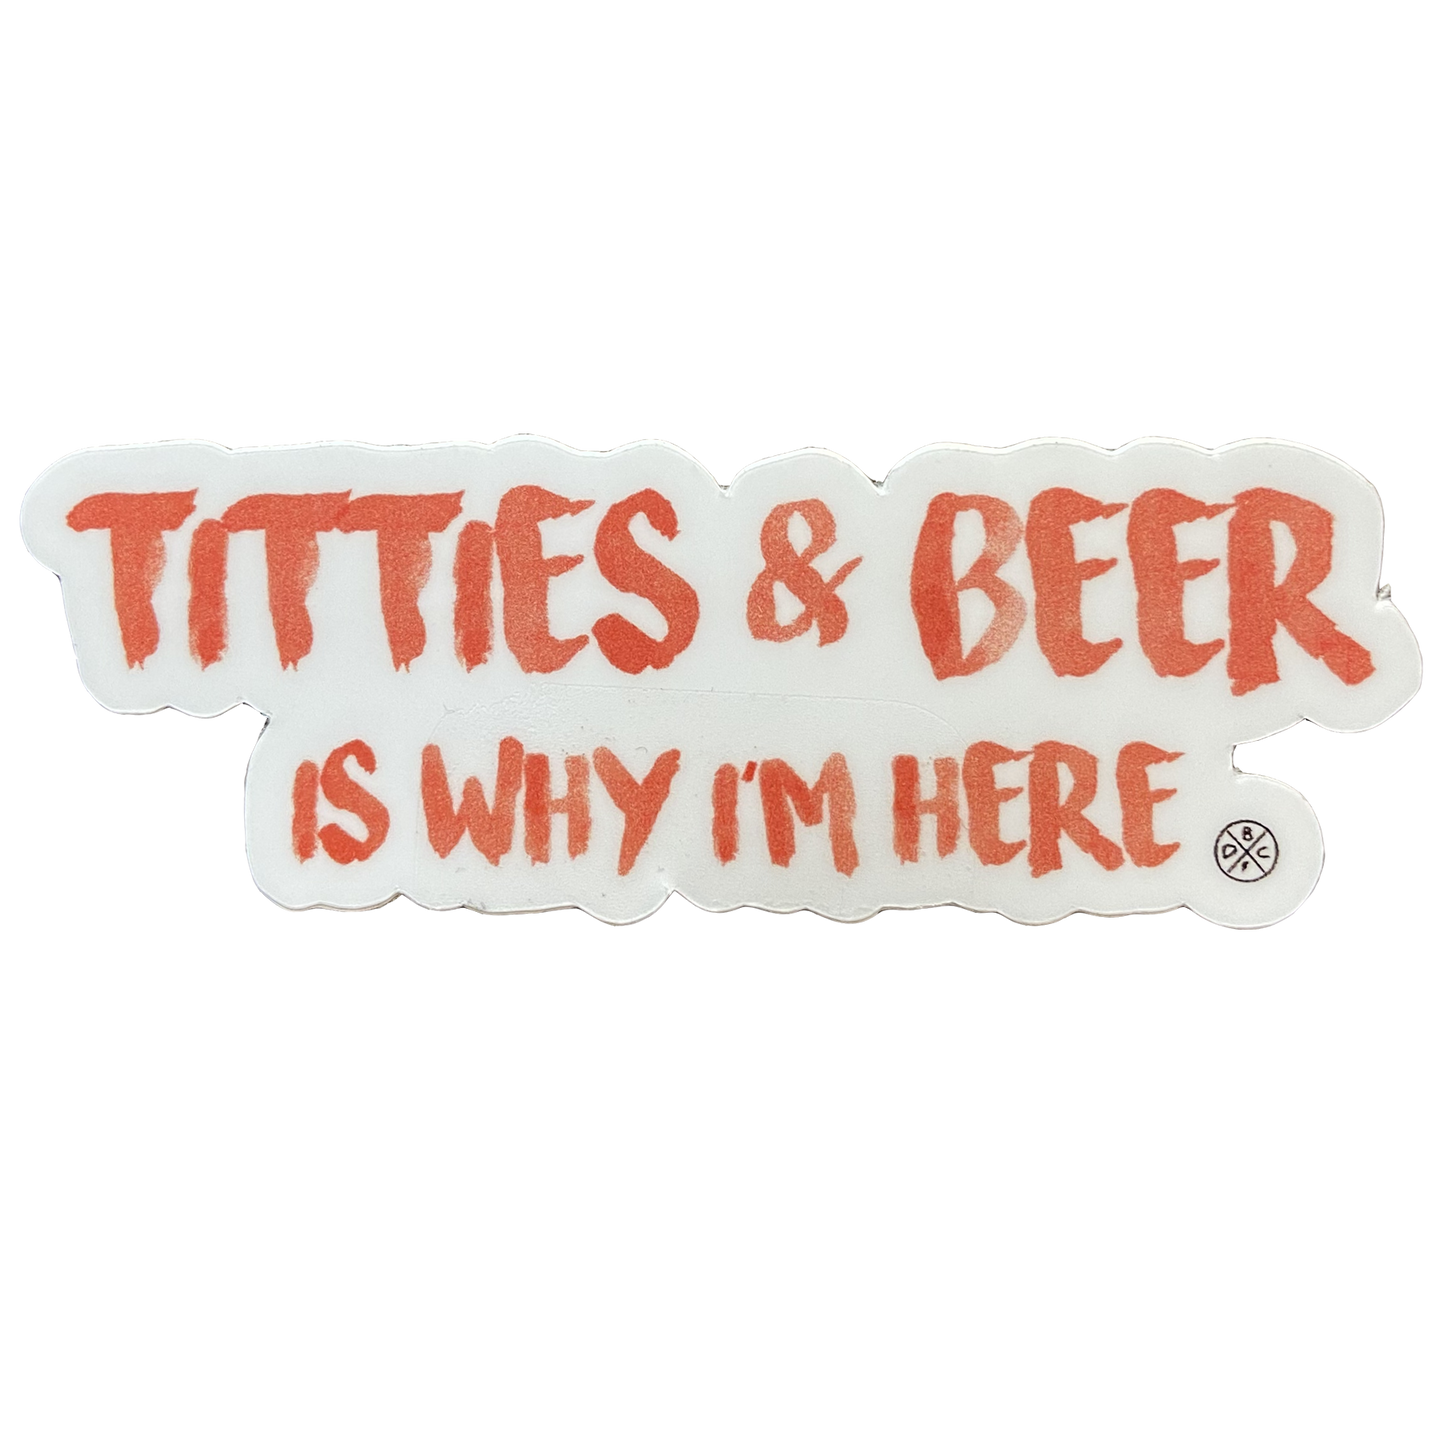 Titties & Beer Sticker